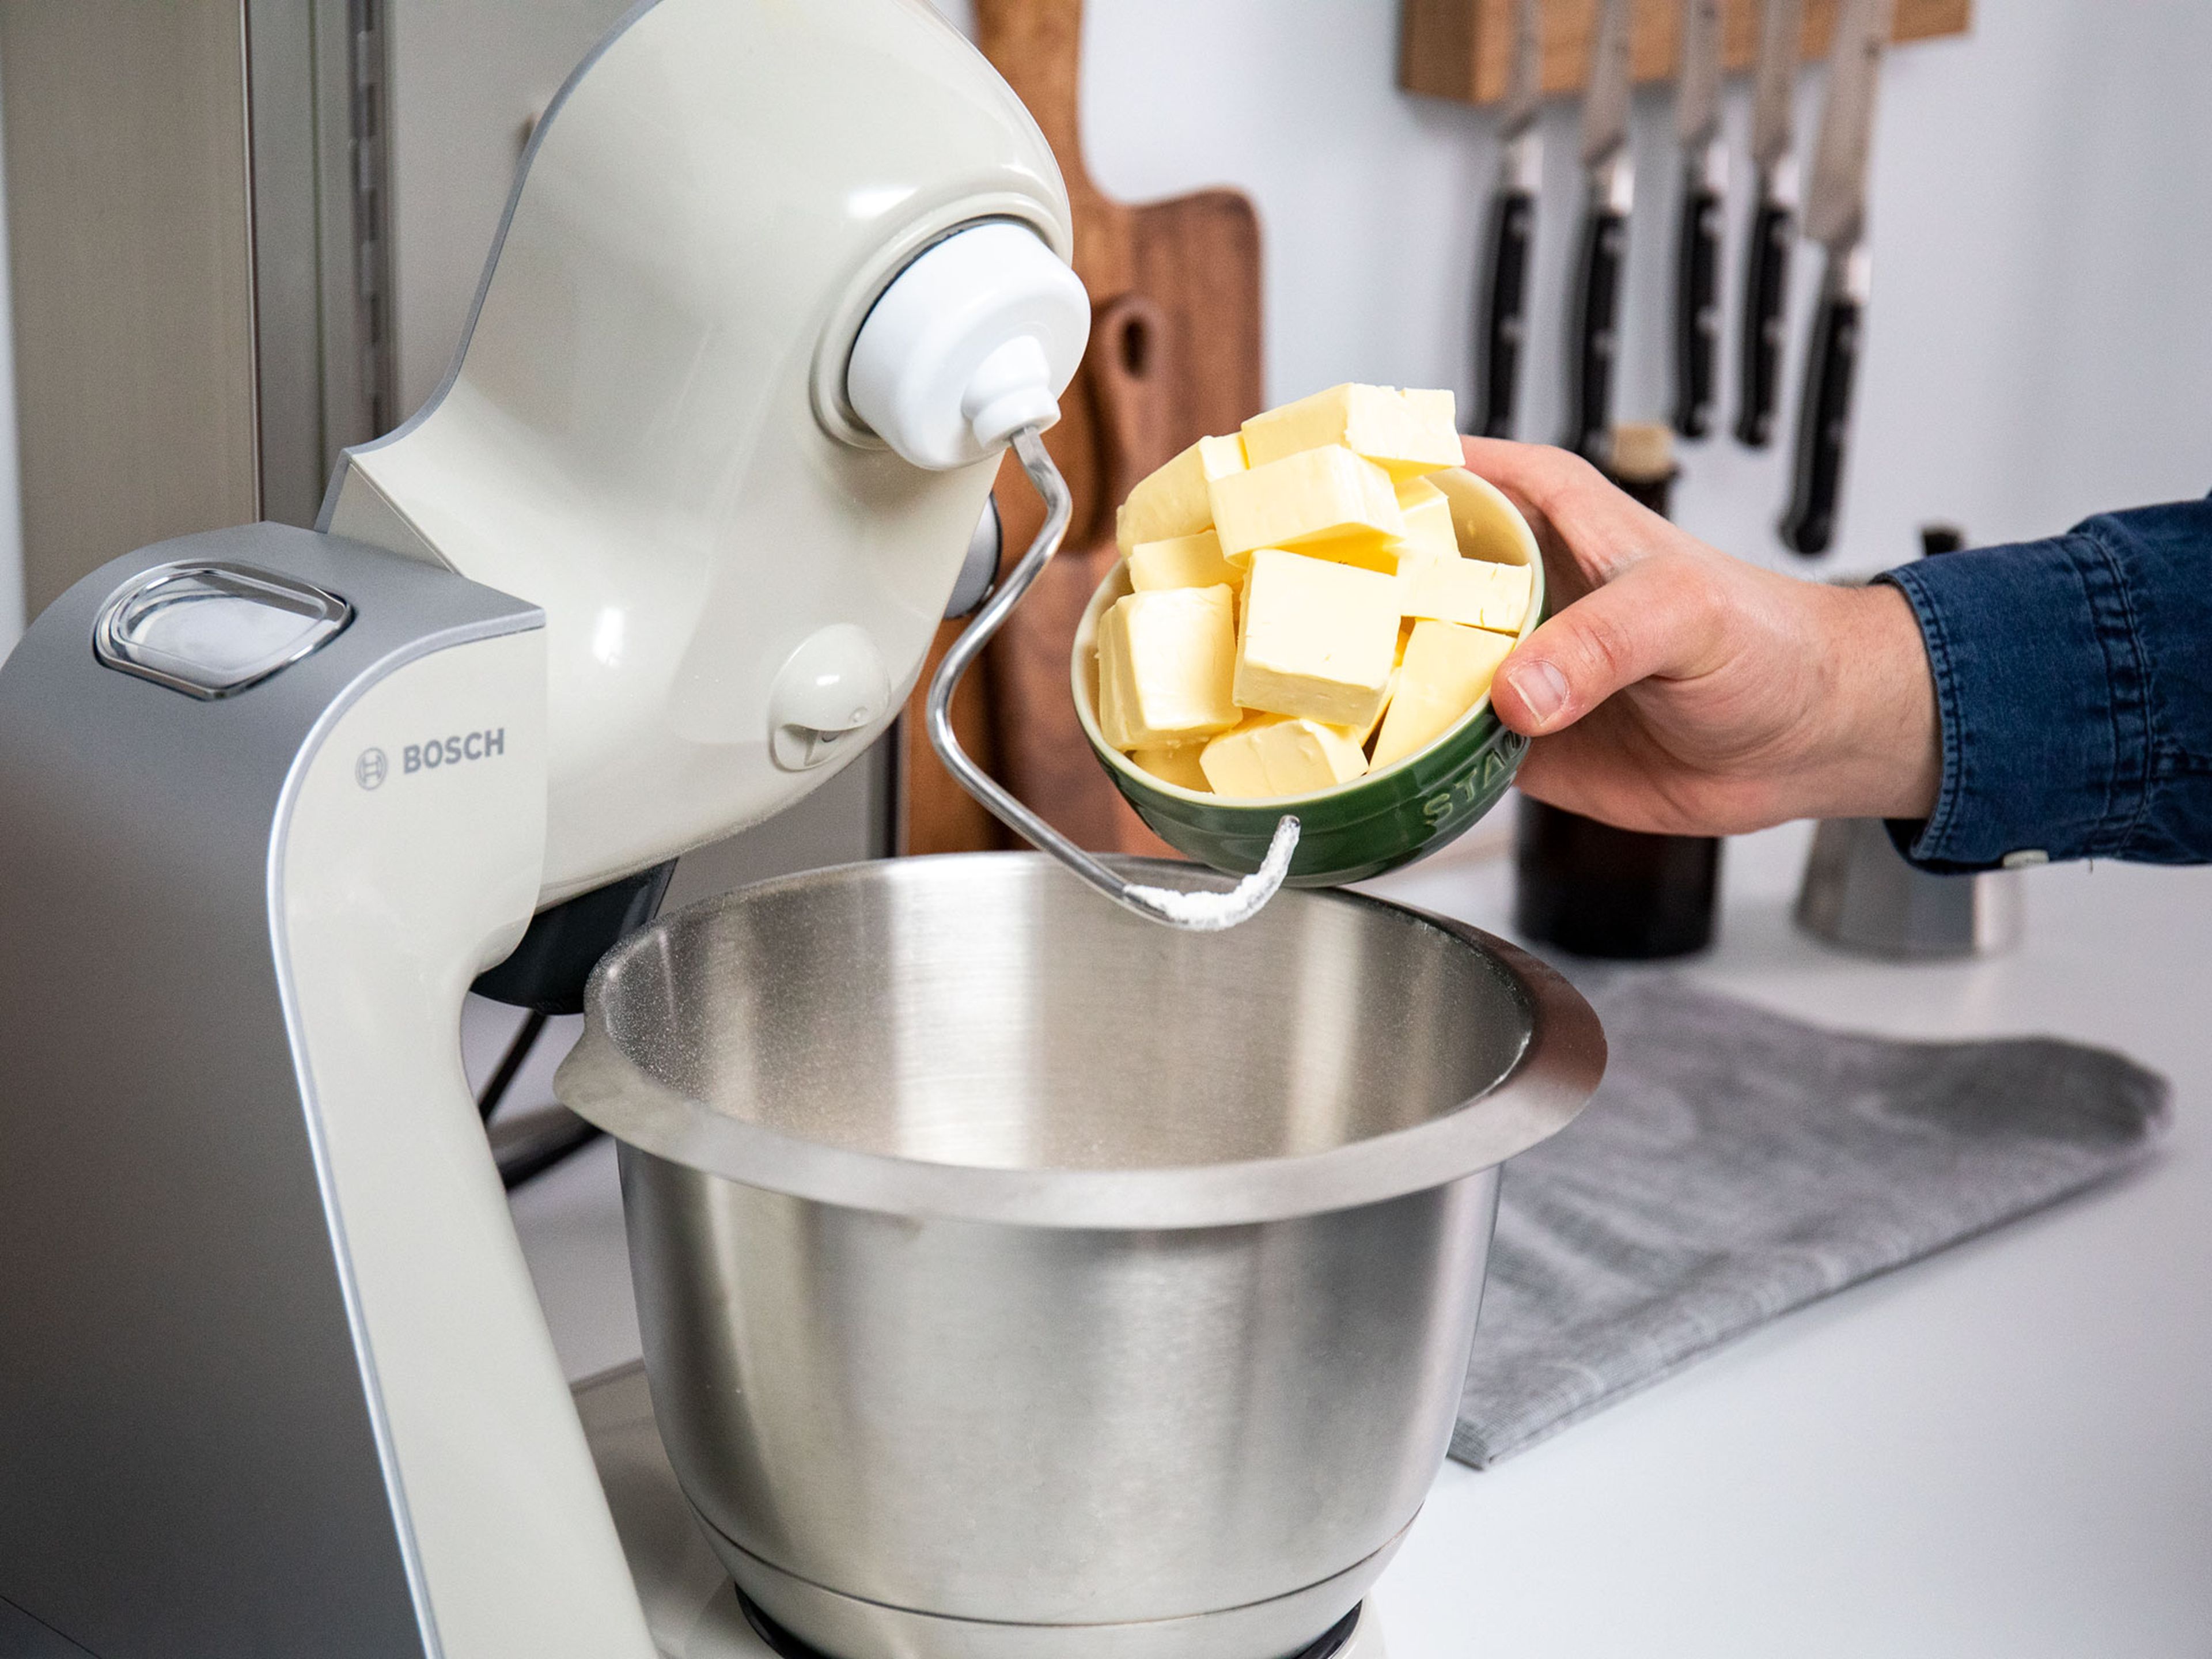 Backofen auf 180°C vorheizen. Mehl, einen Teil des Zuckers und Butter in die Schüssel einer Küchenmaschine geben und zu einem krümeligen Teig verarbeiten.